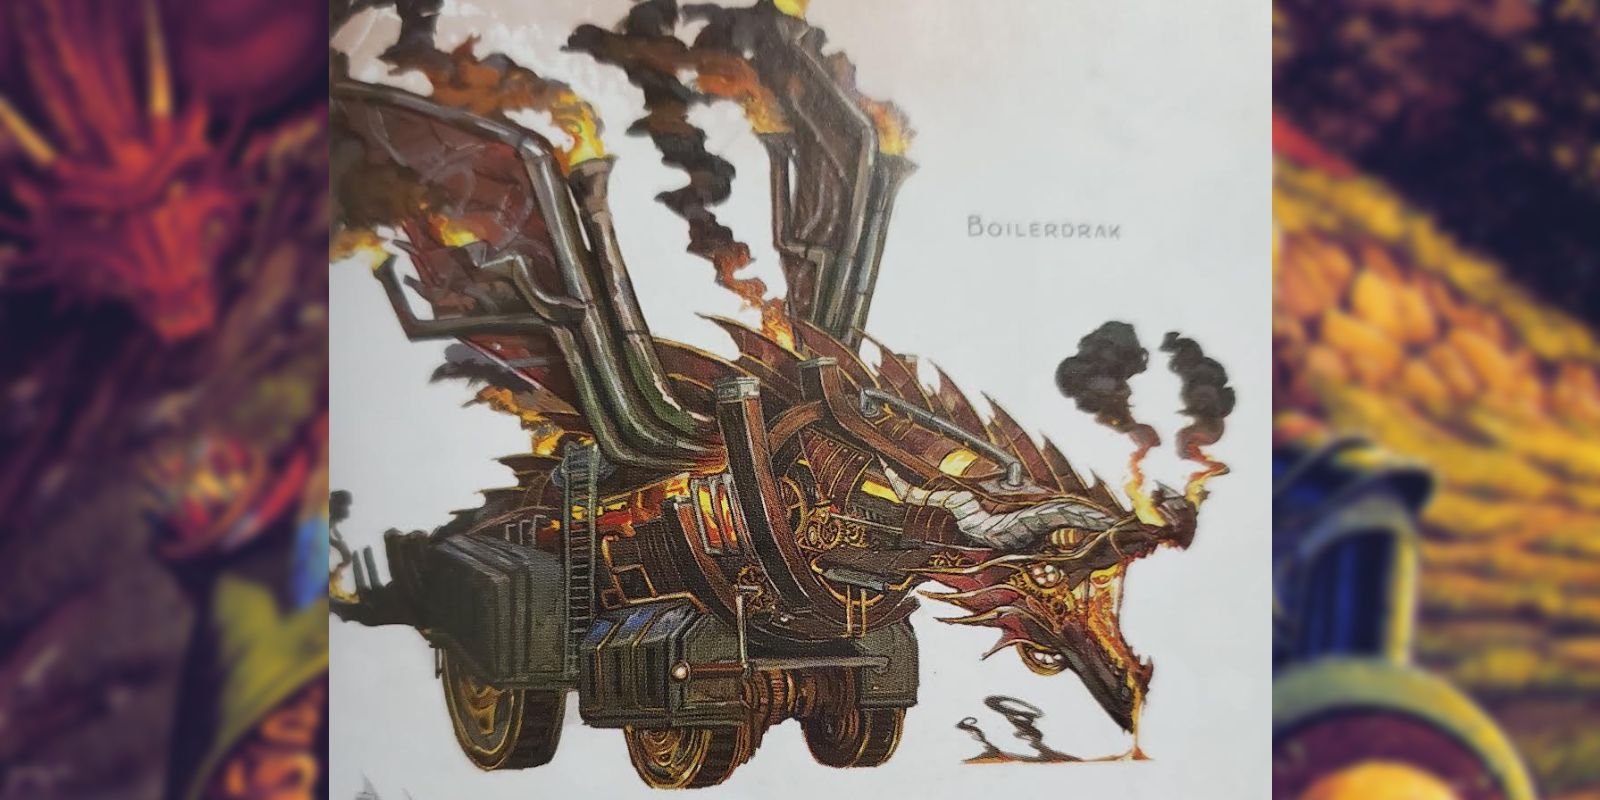 O Boilerdrak, uma máquina de cerco construída na forma de um dragão, projetada para disparar fogo.